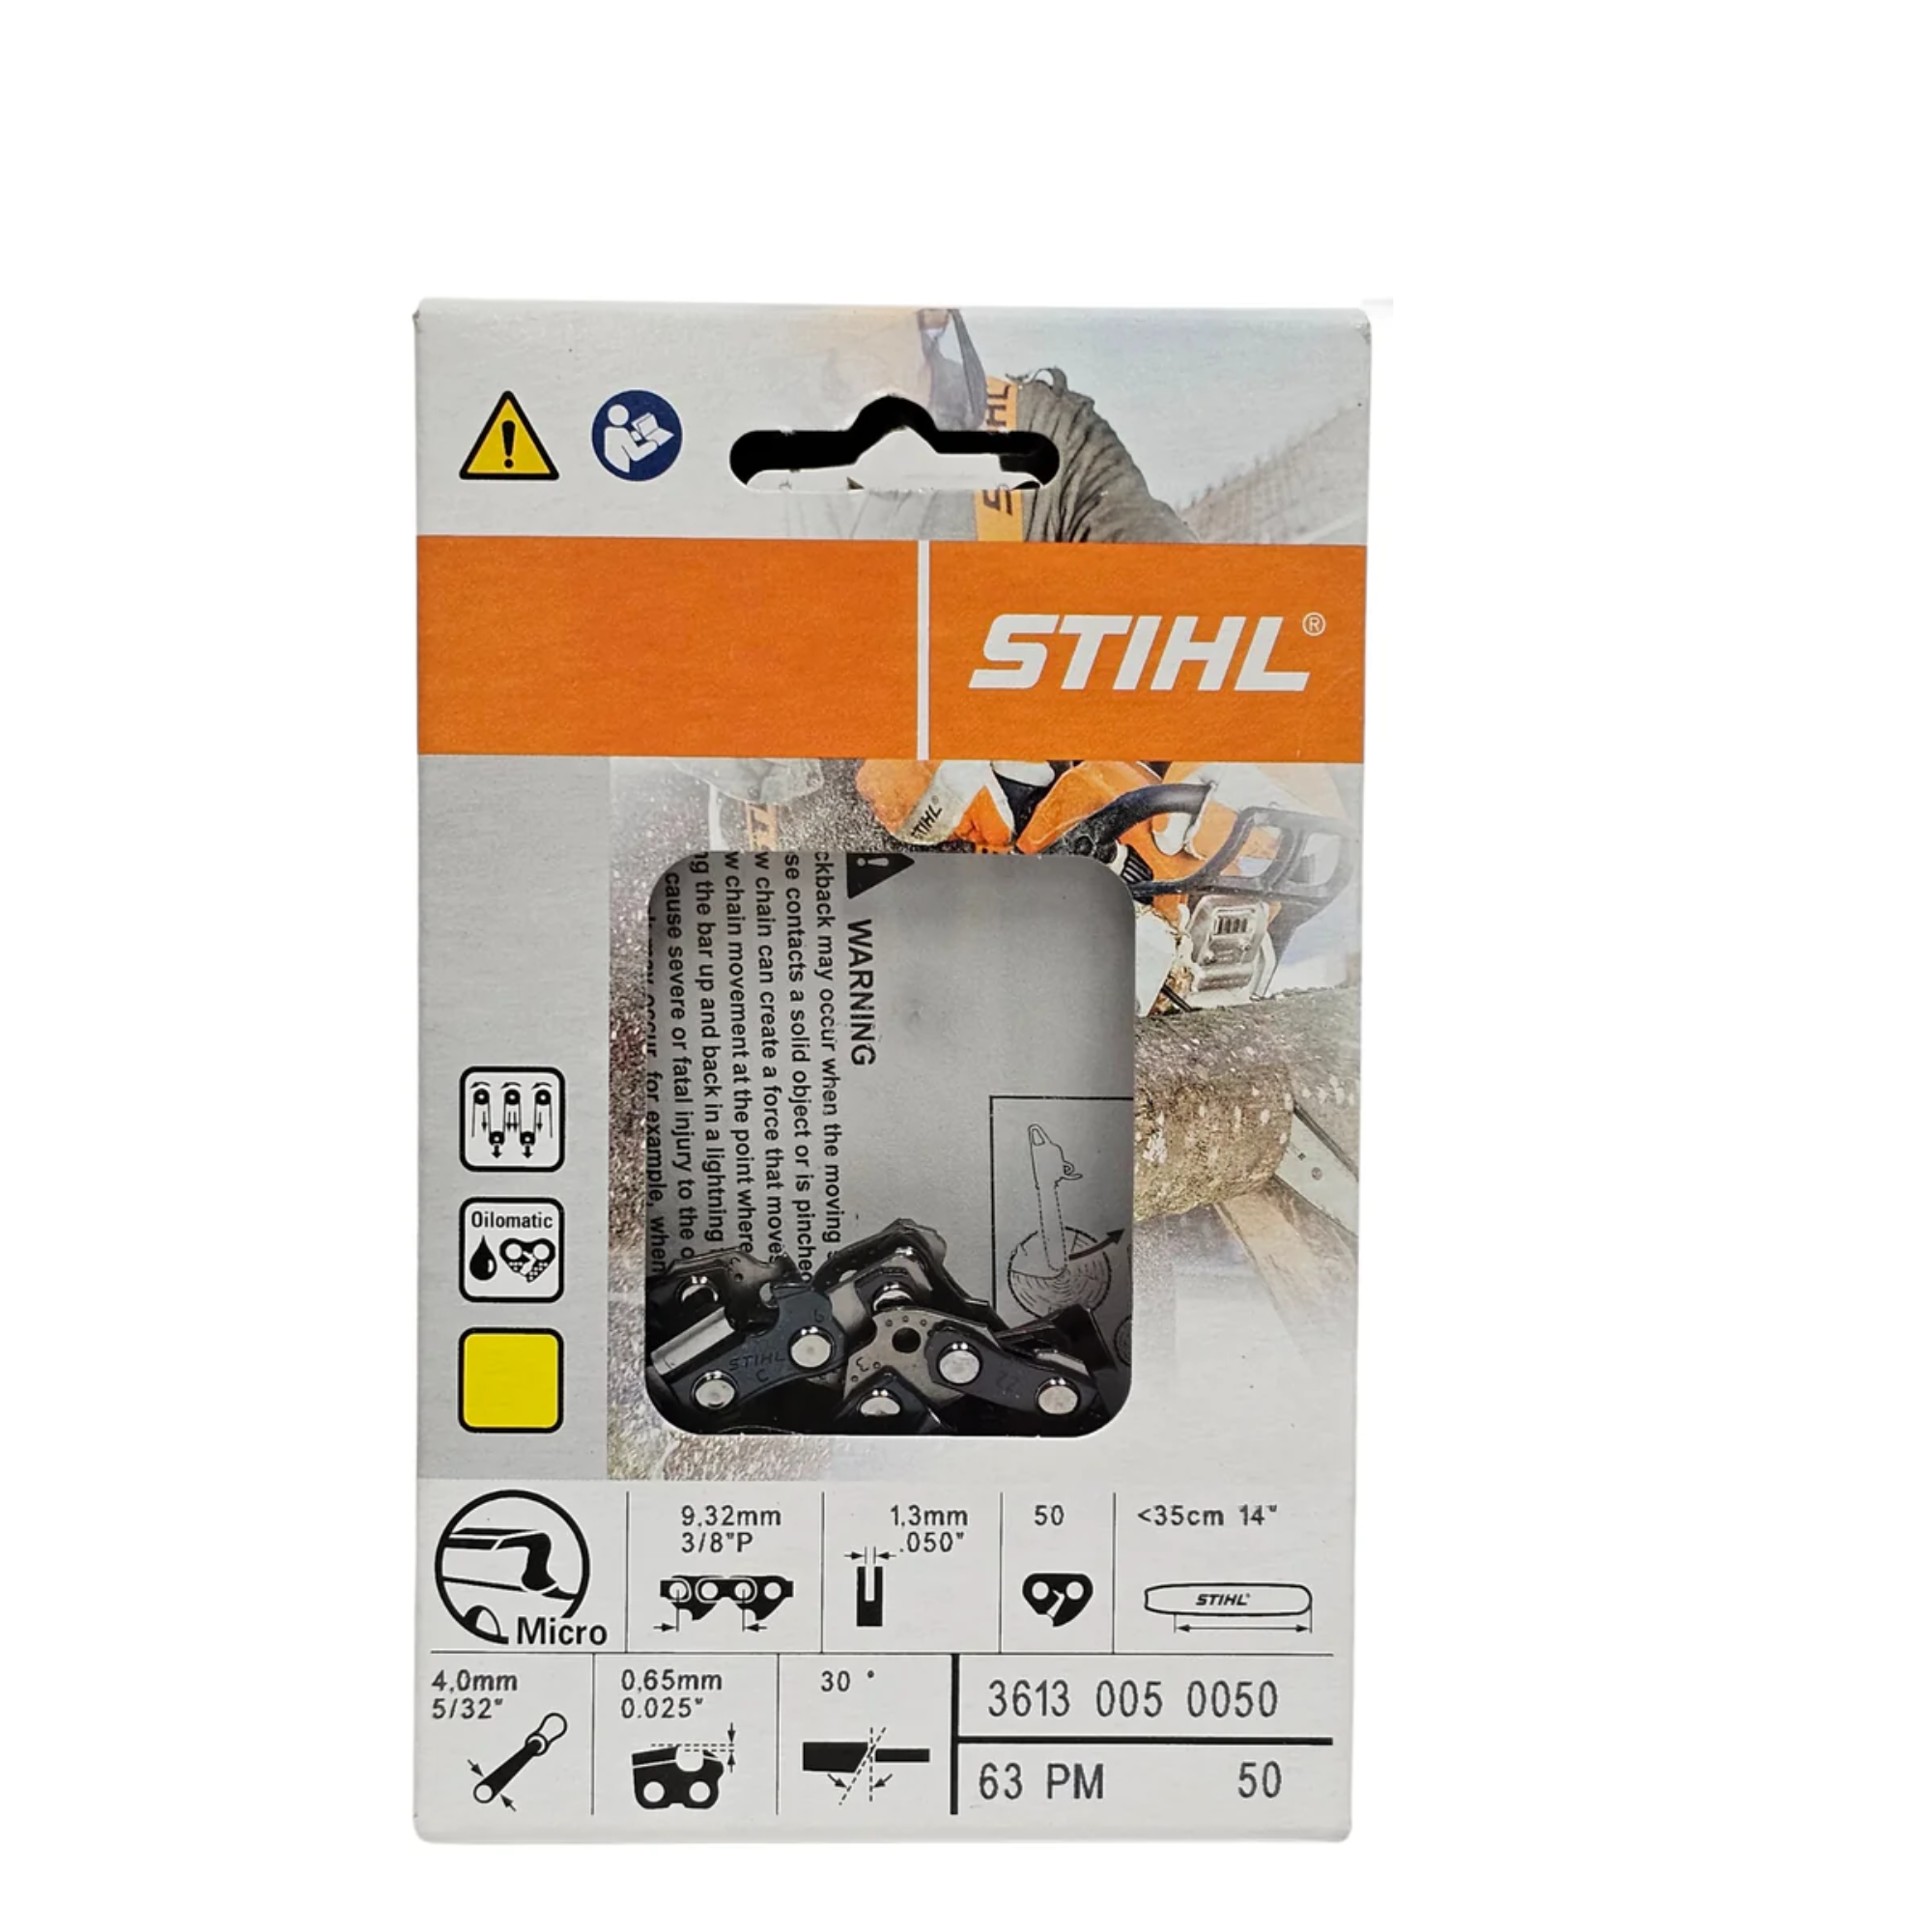 BULK || STIHL Oilomatic Picco Micro | 63 PM 50 | 14 in. | 50 Drive Links | Chainsaw Chain | 3613 005 0050